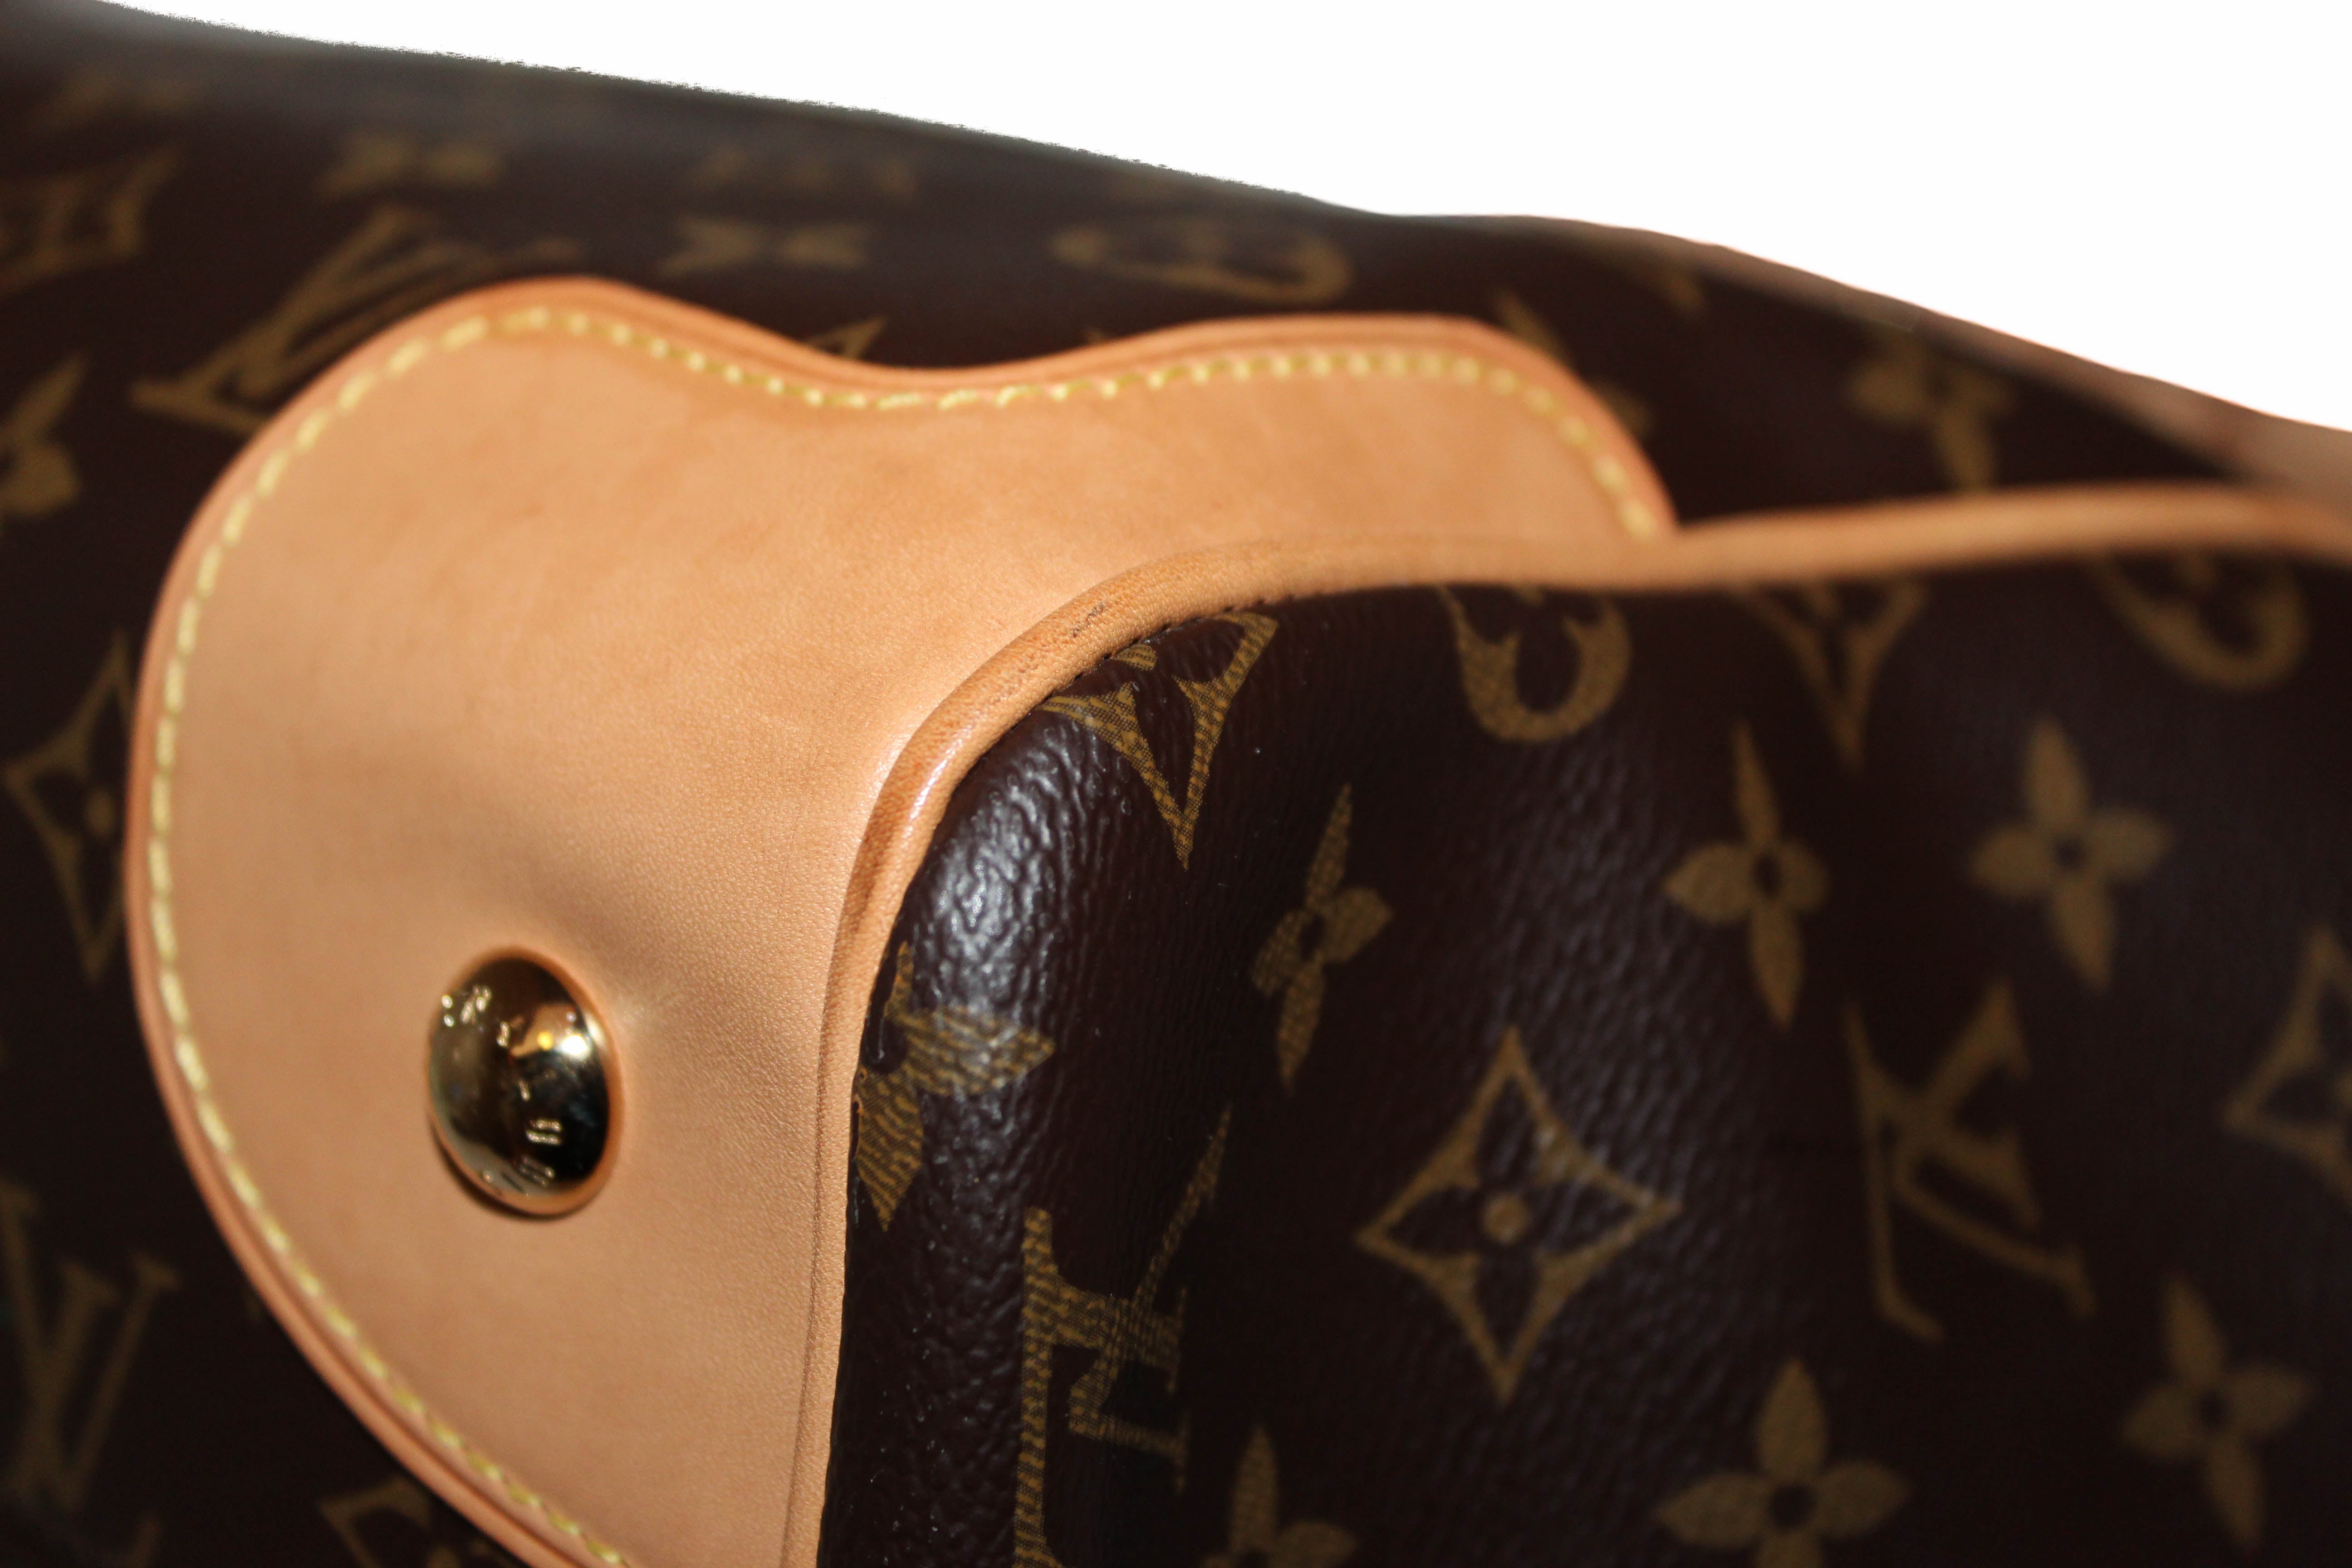 Authentic Louis Vuitton Classic Monogram Estrella NM Tote Bag